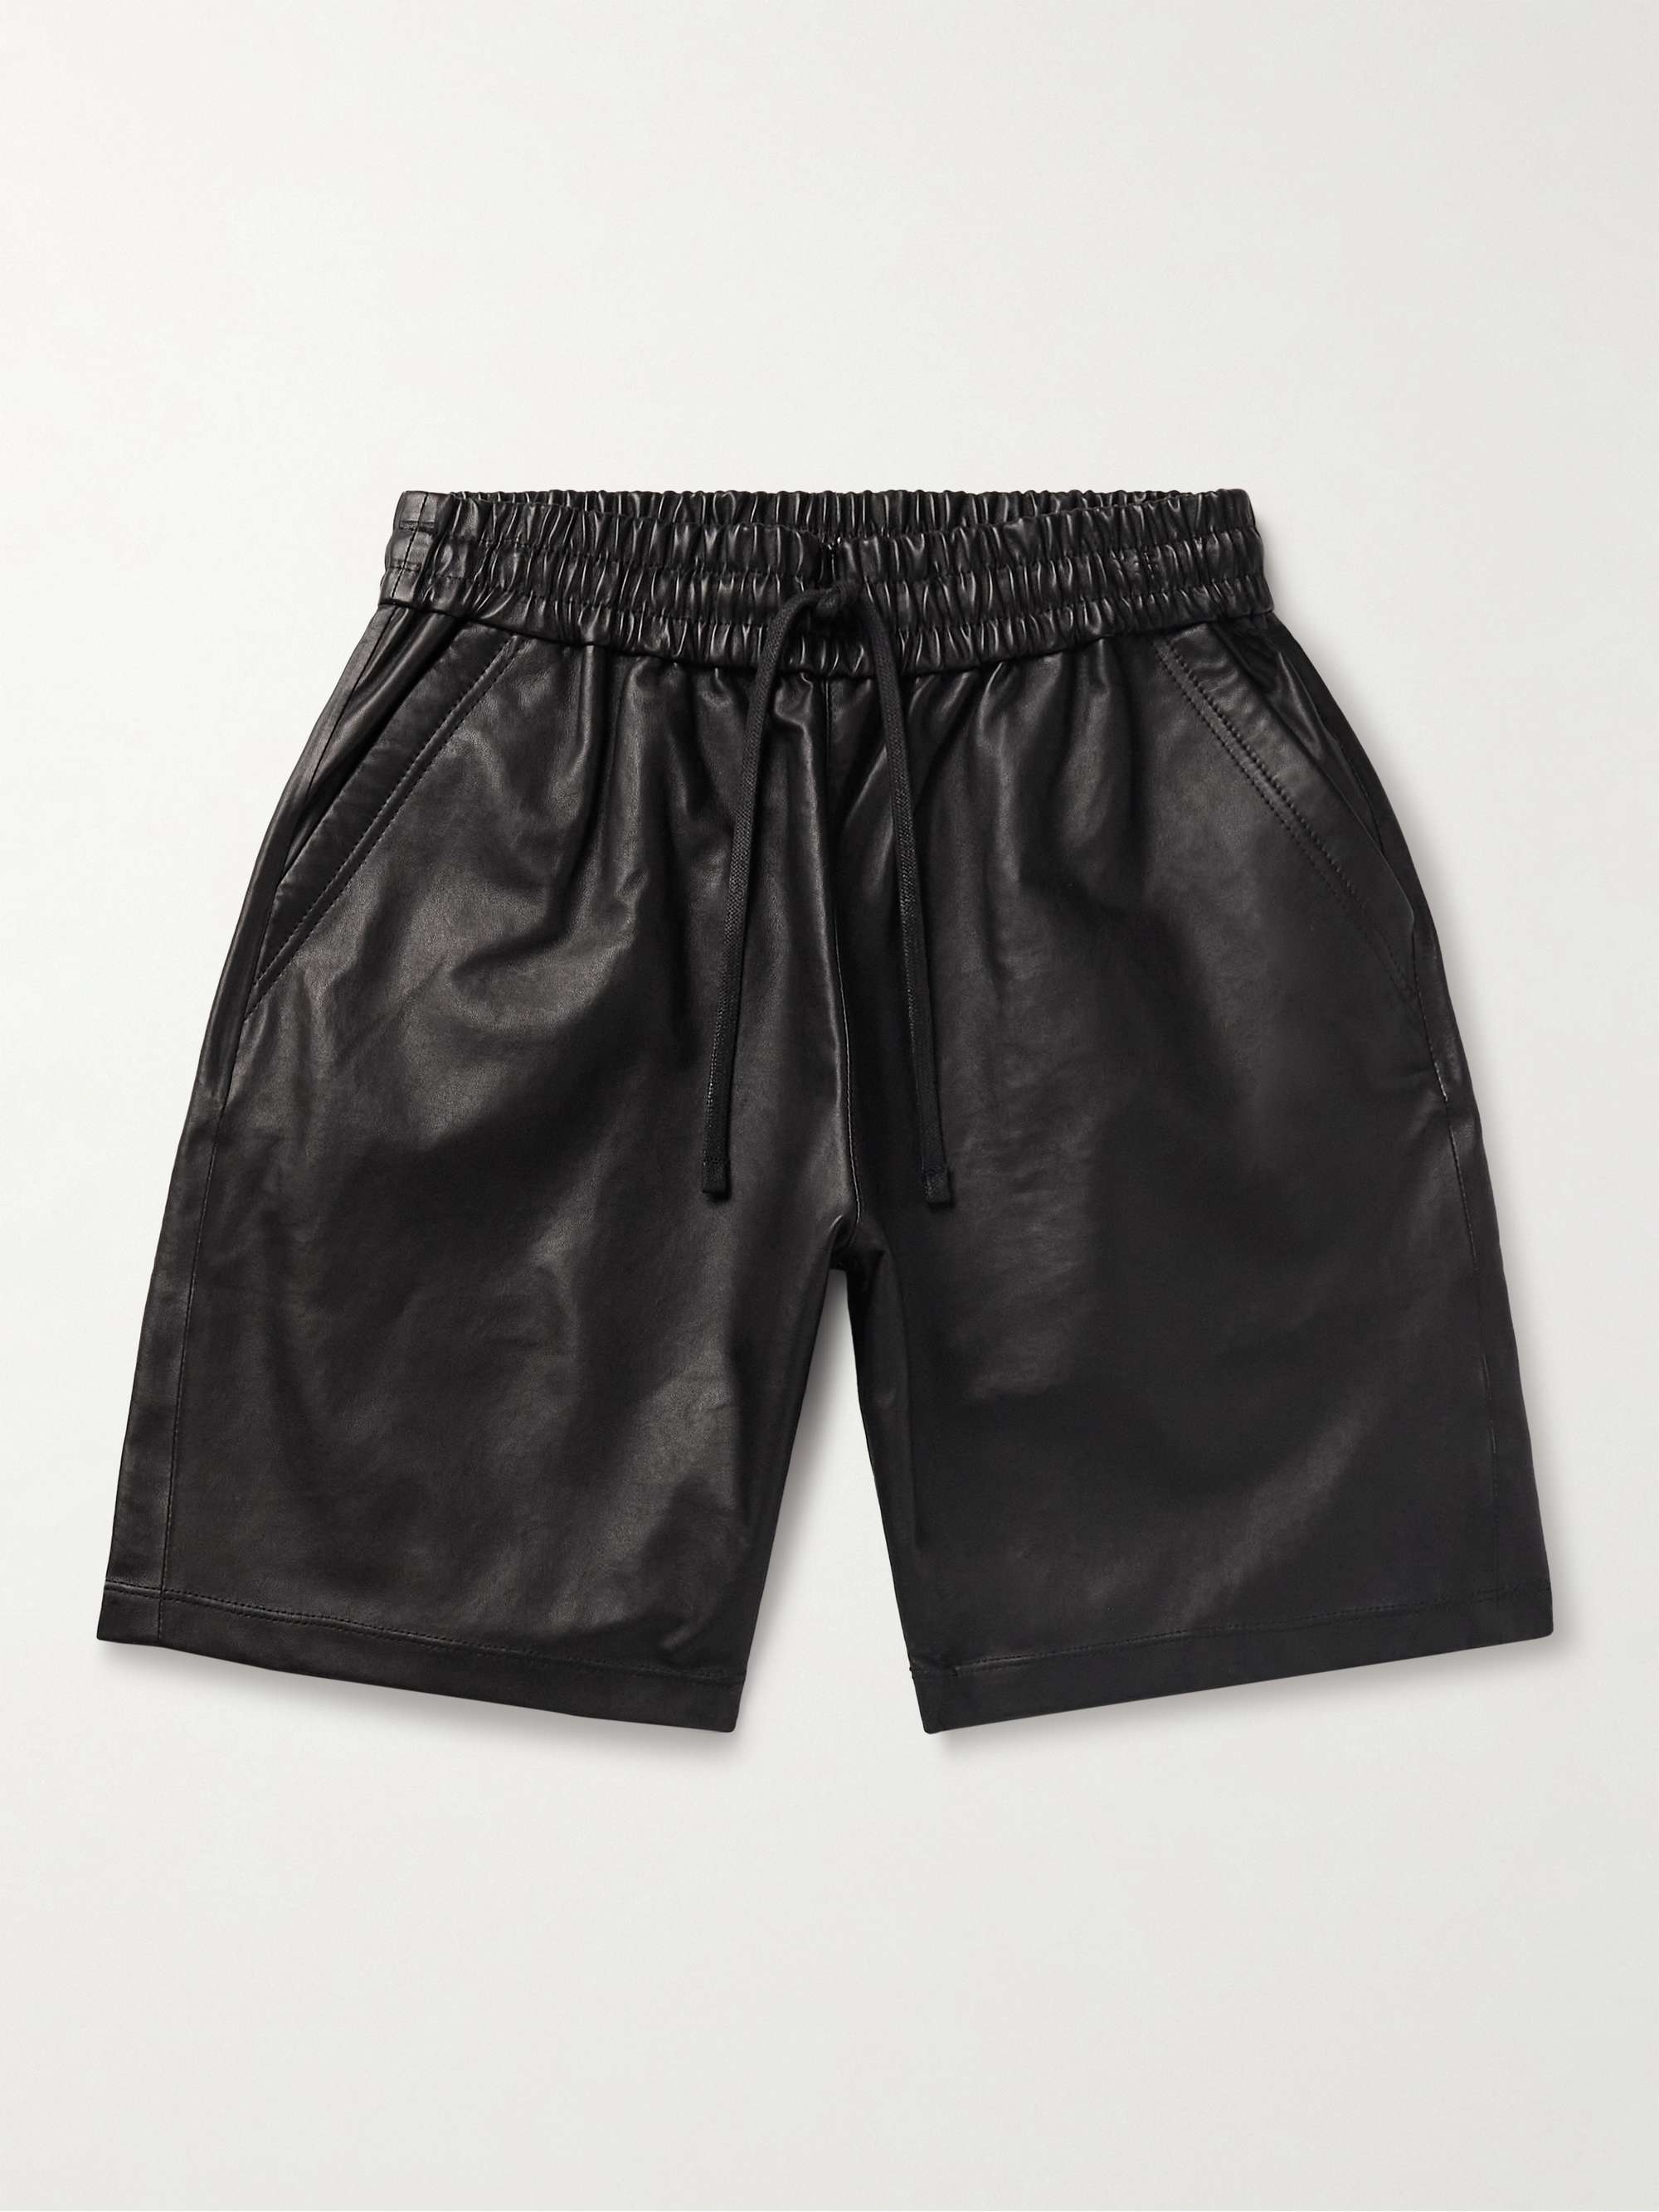 JOHN ELLIOTT LA Straight-Leg Leather Drawstring Shorts for Men | MR PORTER